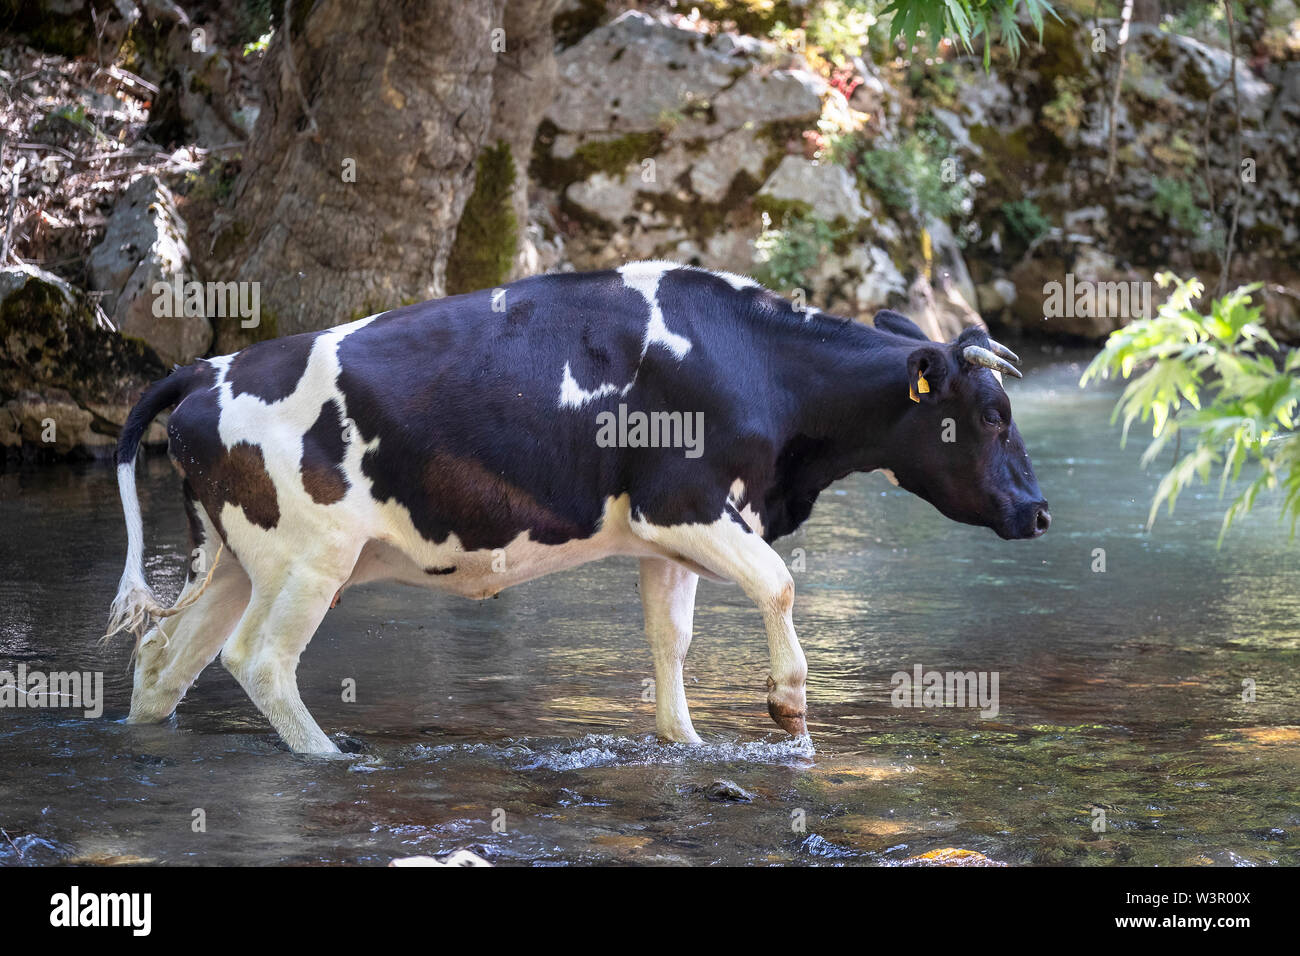 El ganado doméstico. Alcance libre de ganado en blanco y negro. Vaca cruzar un arroyo. Einfyayla, Turquía Foto de stock